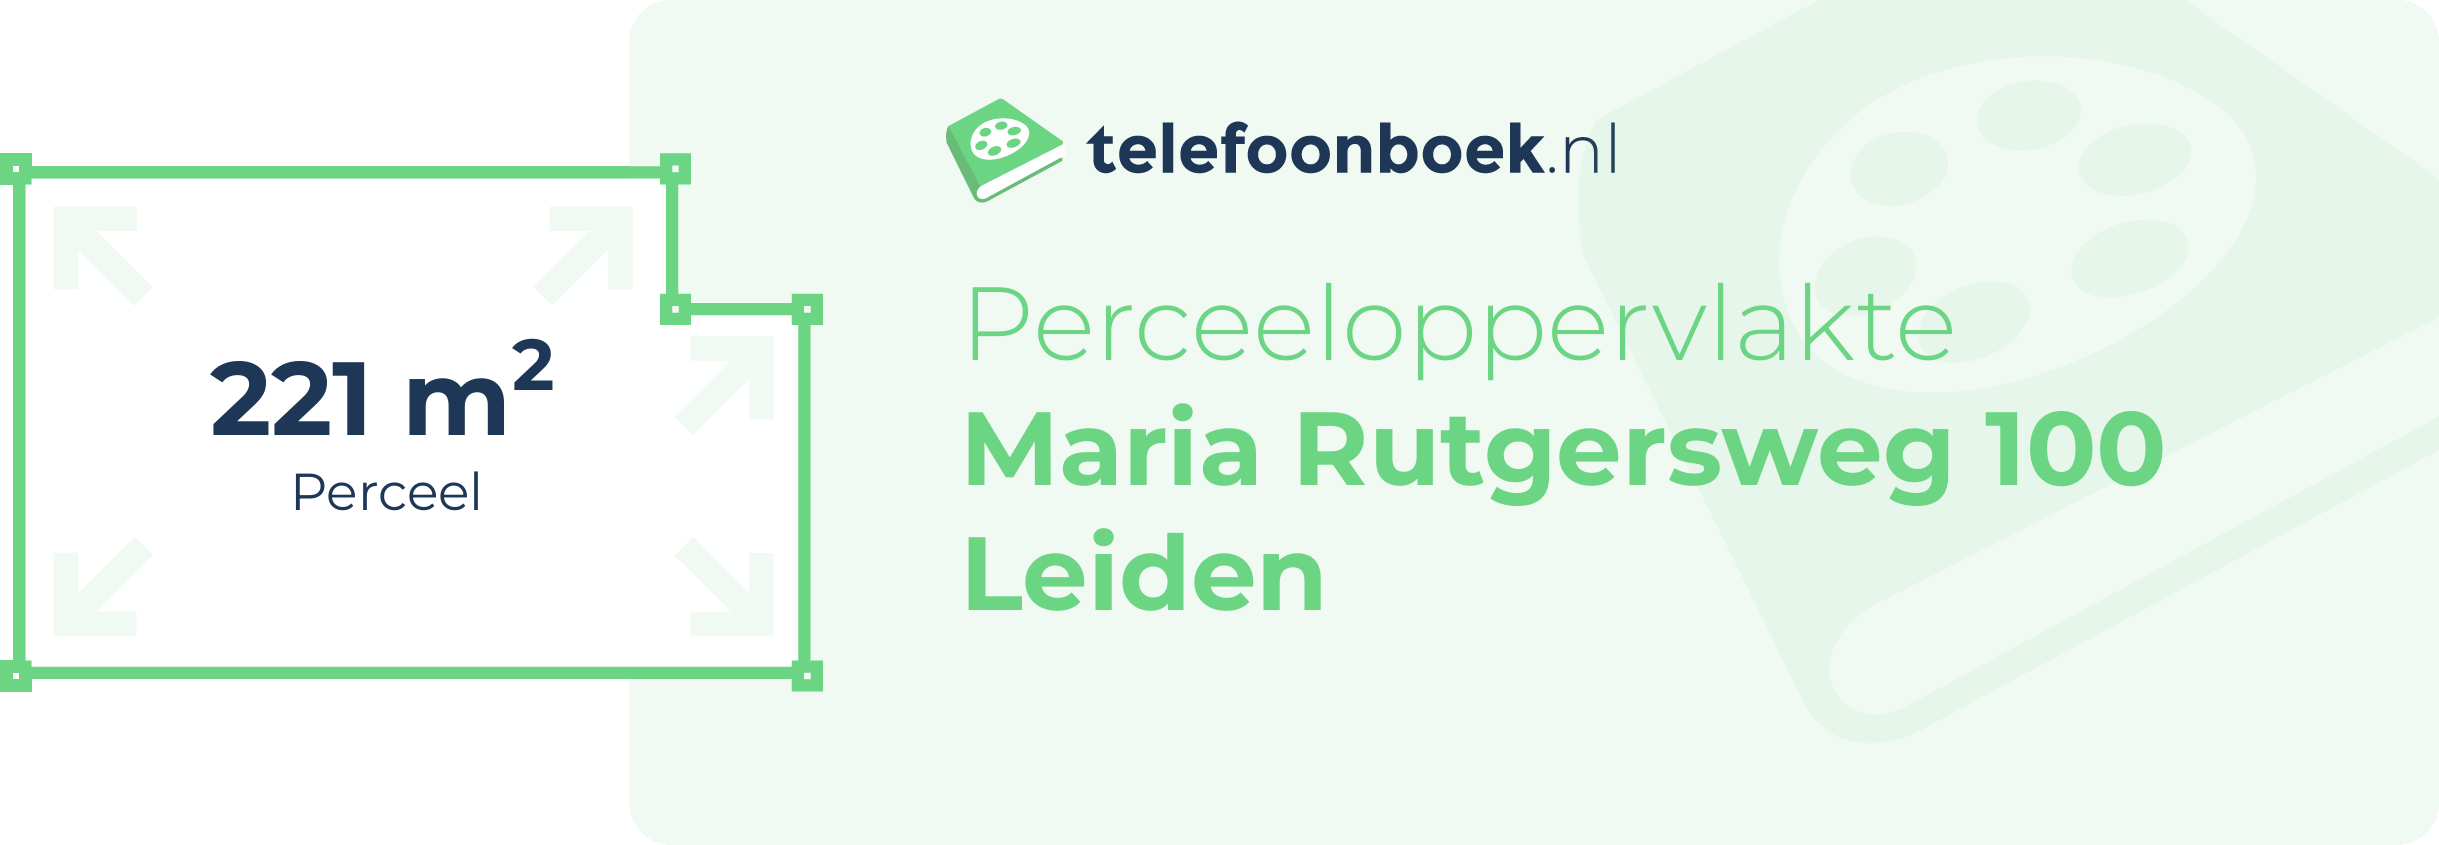 Perceeloppervlakte Maria Rutgersweg 100 Leiden